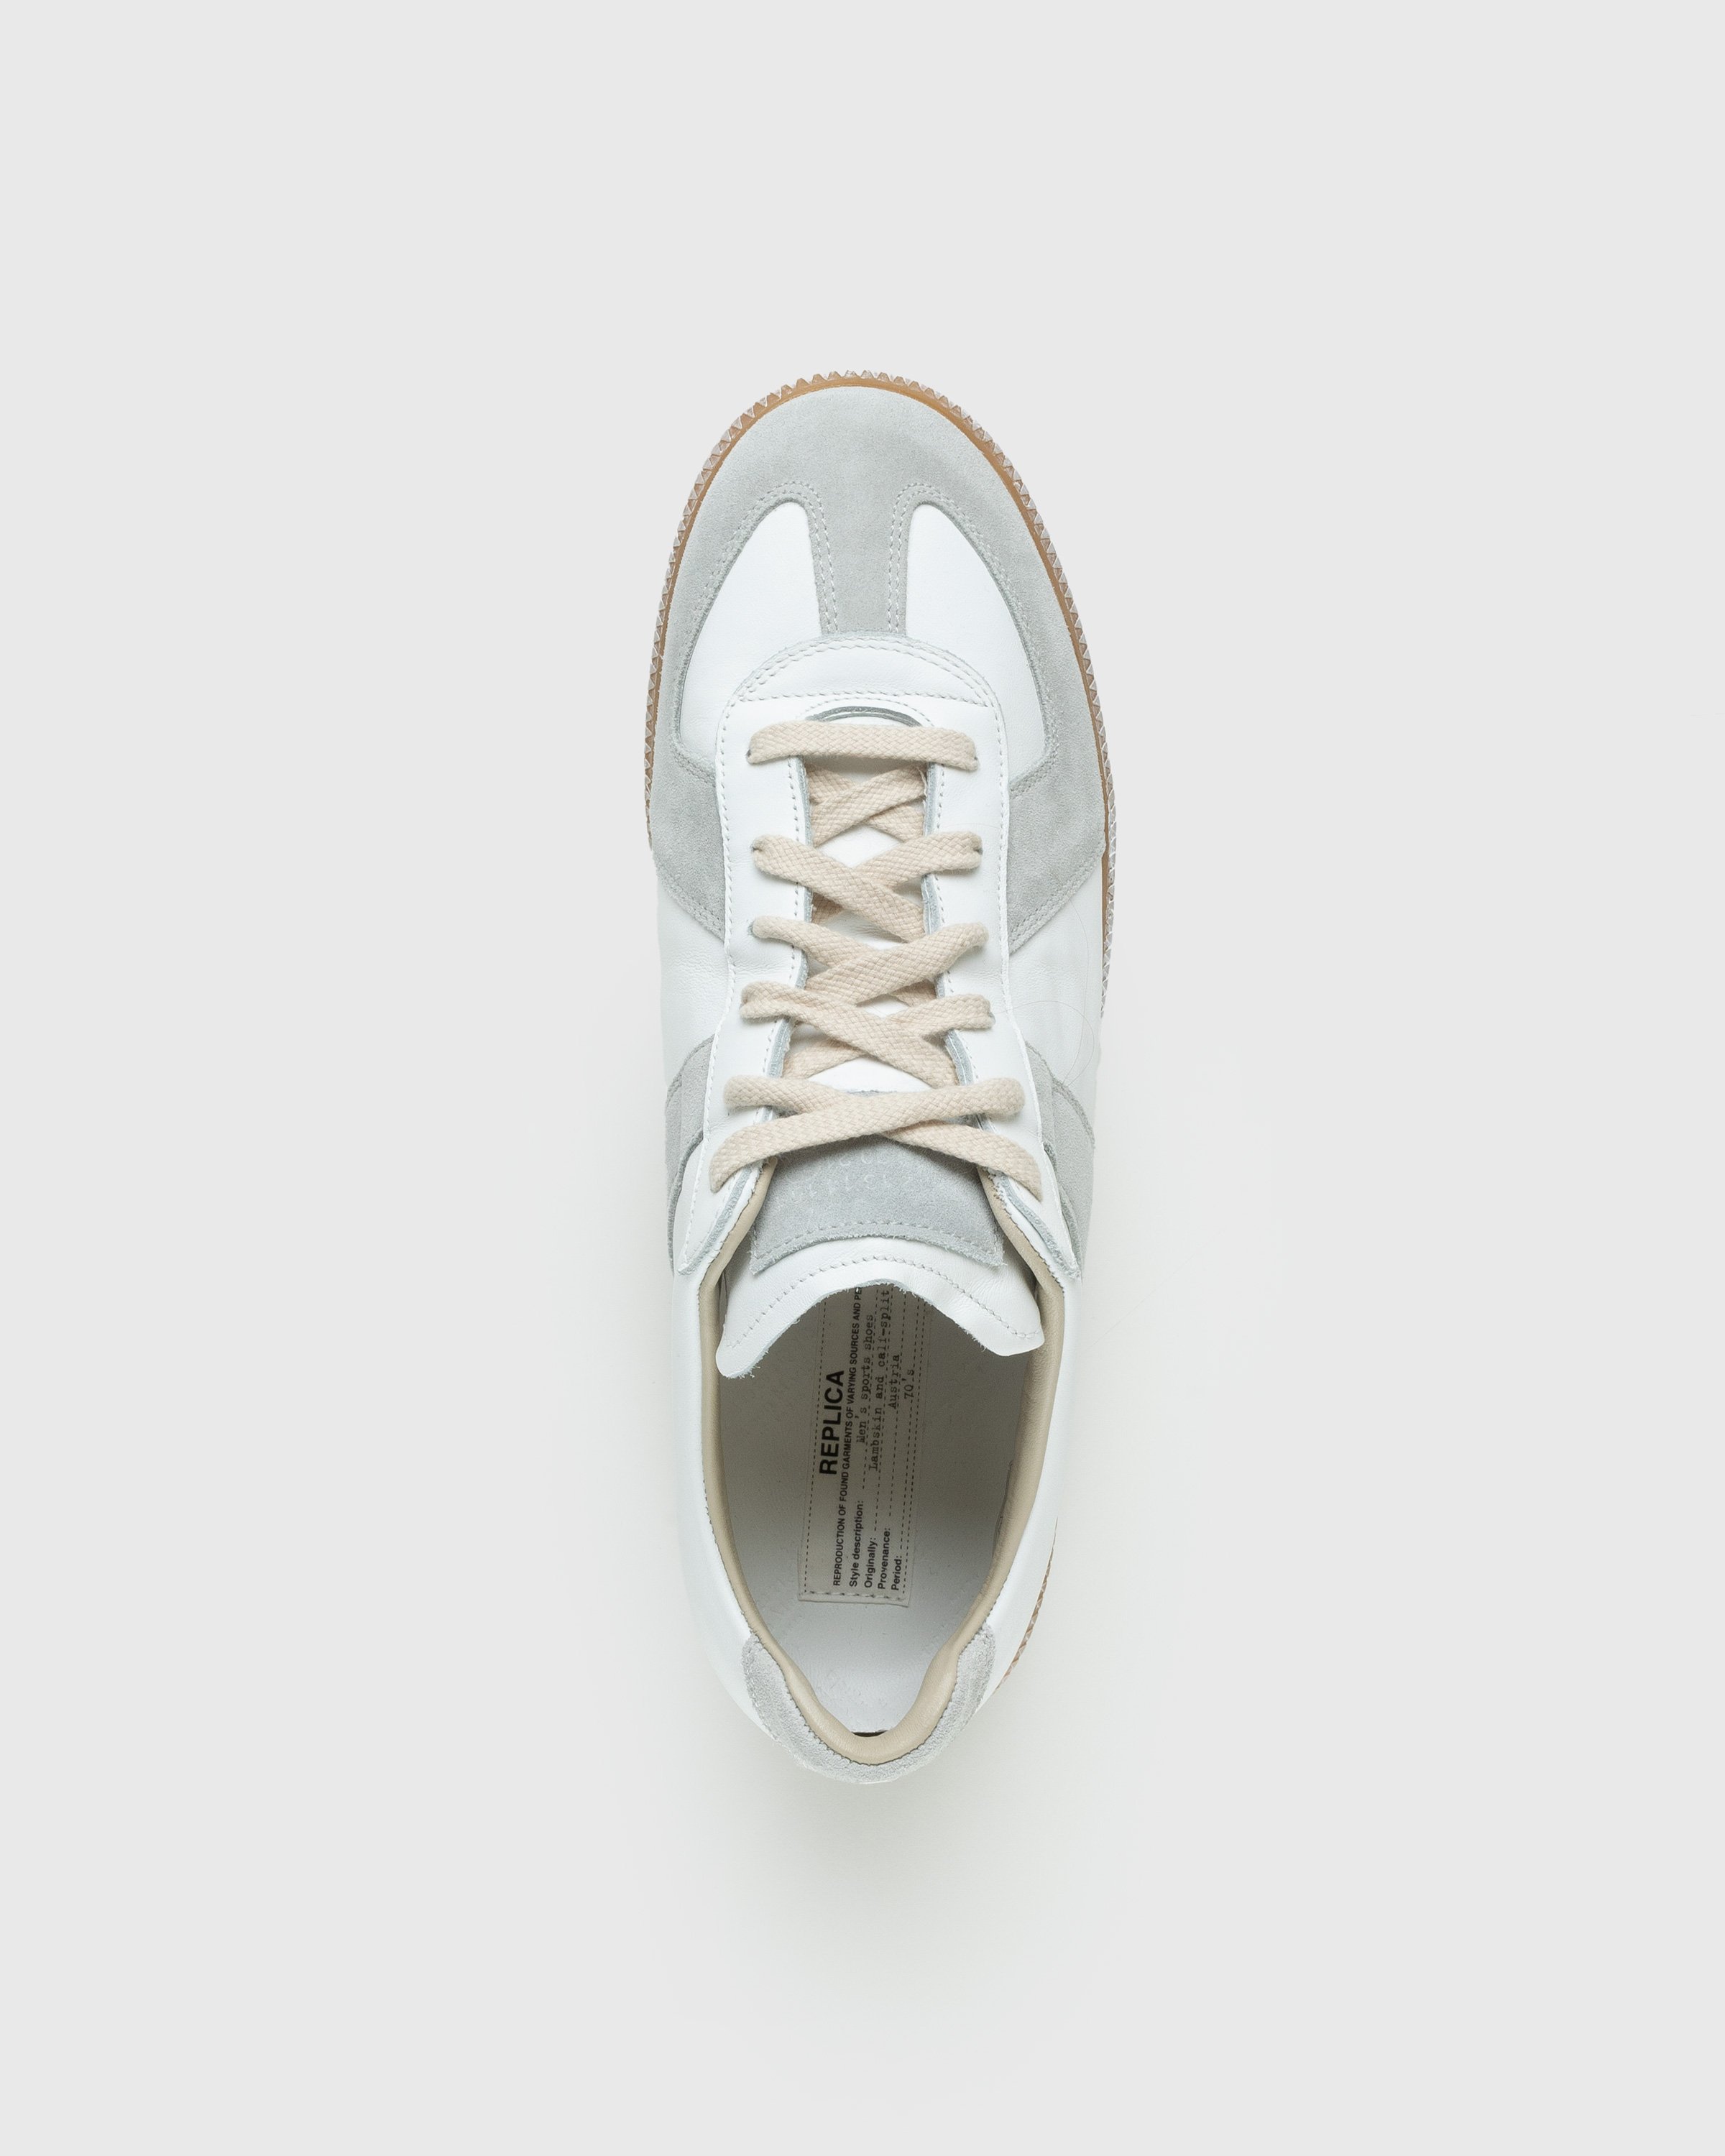 Maison Margiela - Replica Low Top All White - Footwear - Beige - Image 5